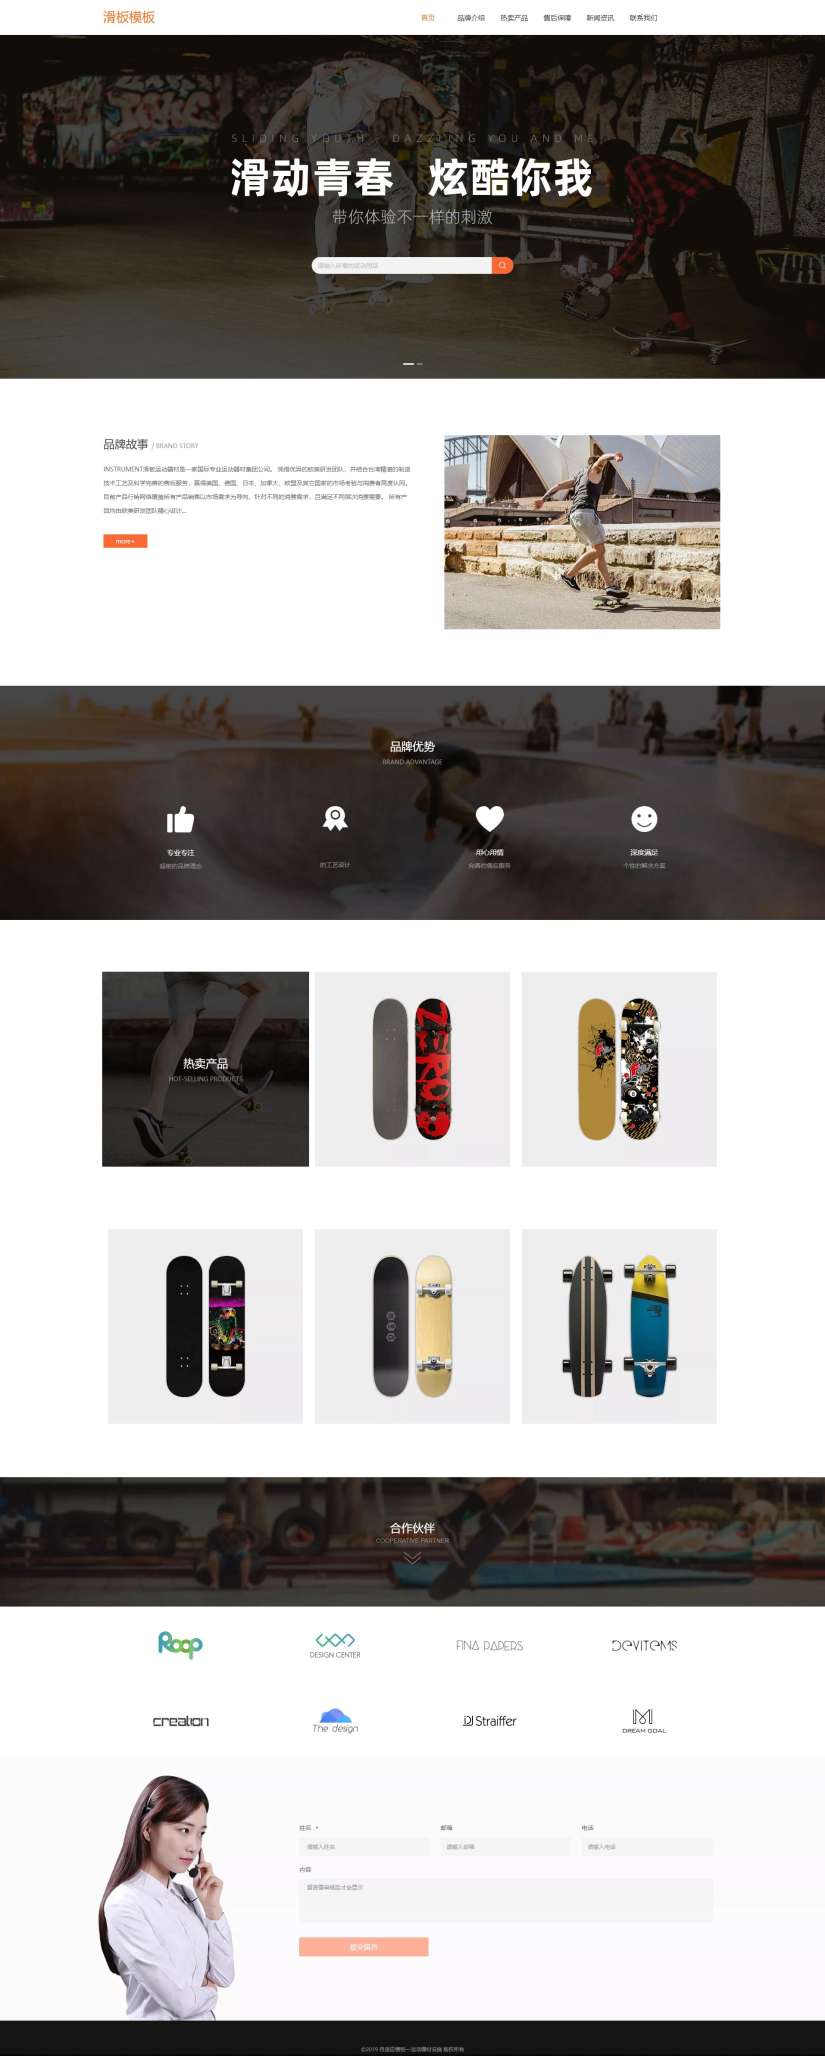 优选滑板运动器材网站模板[演示]